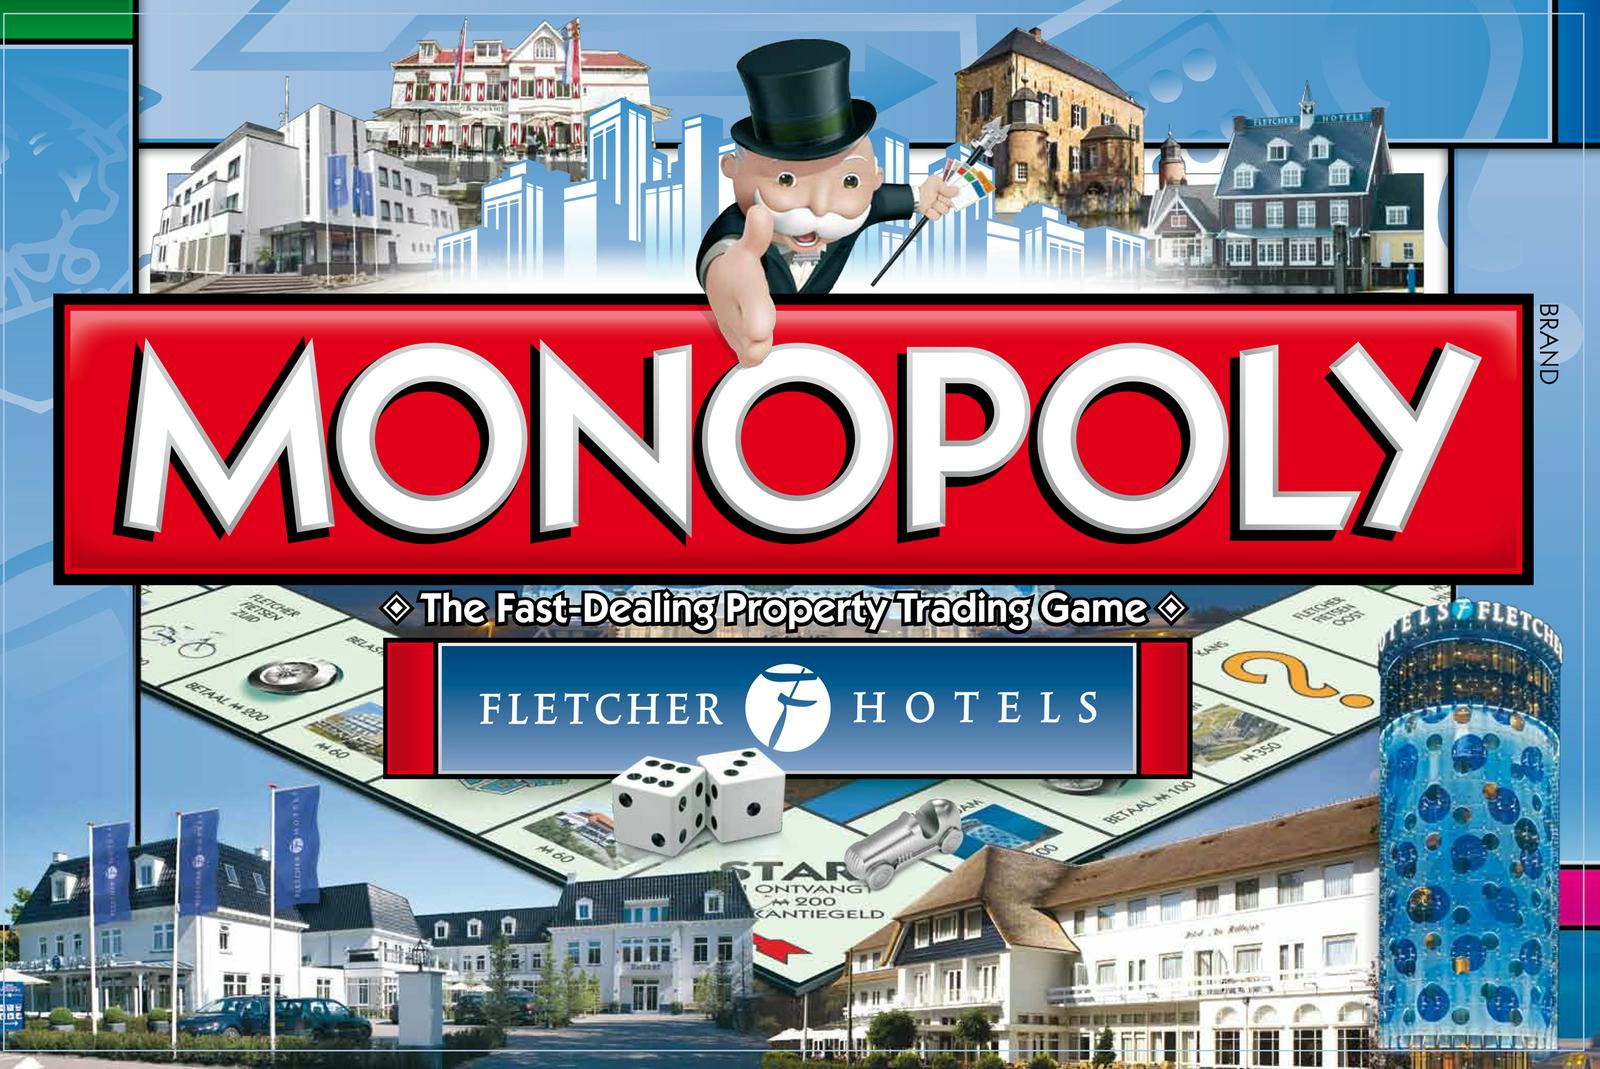 Fletcher Hotels komt met eigen editie Monopoly